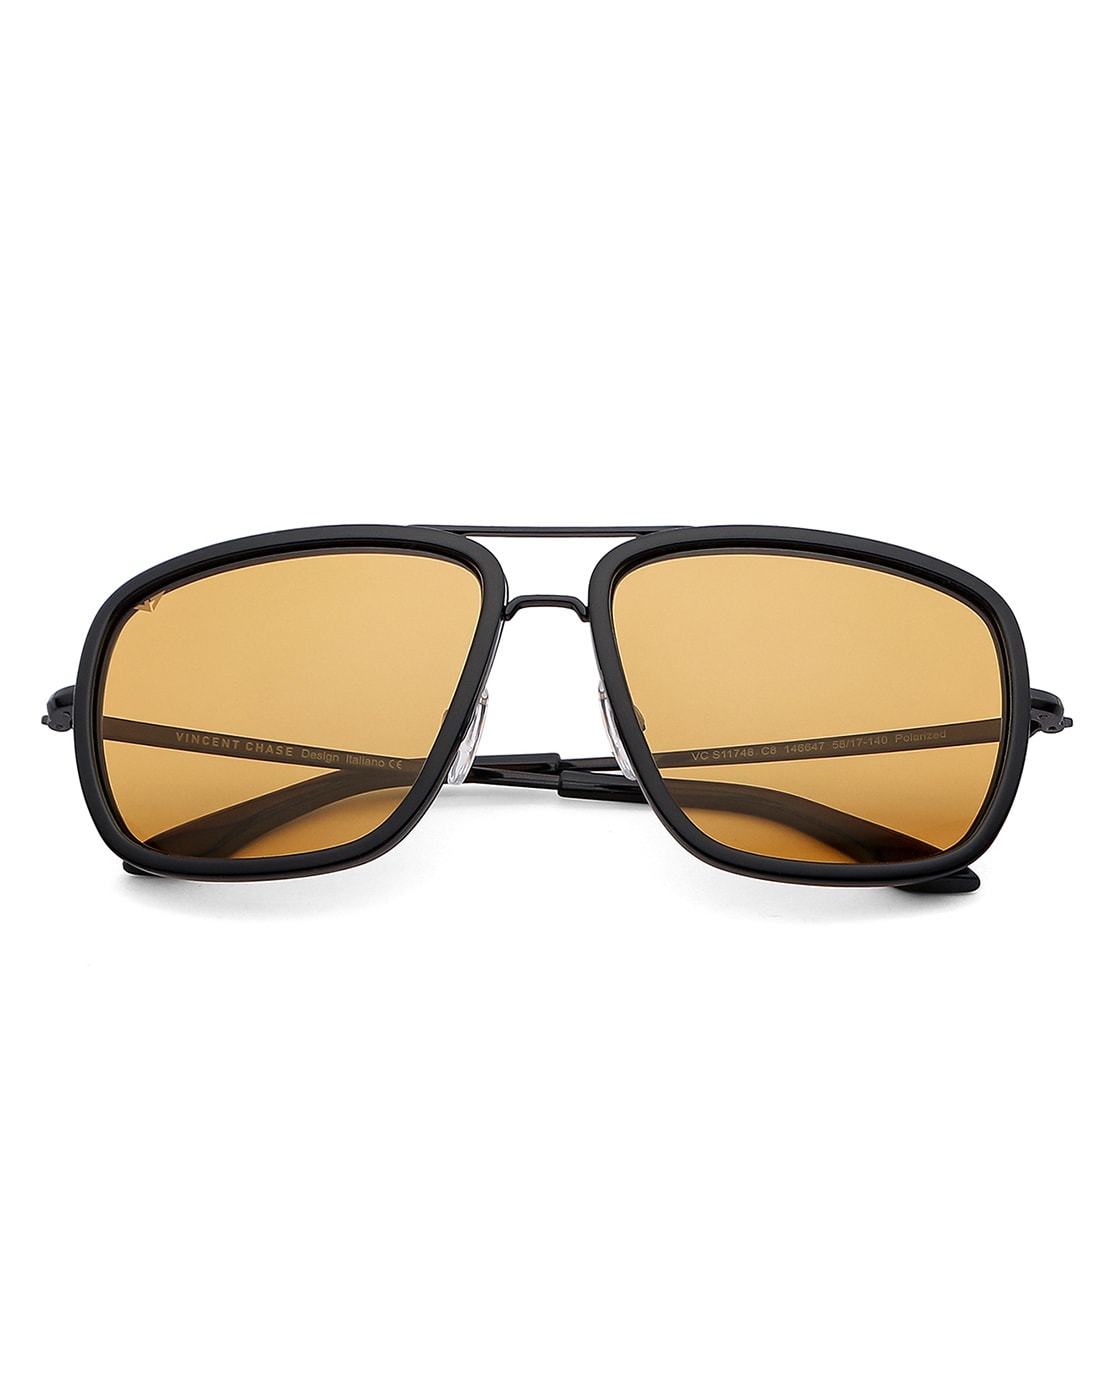 Buy VINCENT CHASE by Lenskart Rectangular Sunglasses Green For Men & Women  Online @ Best Prices in India | Flipkart.com